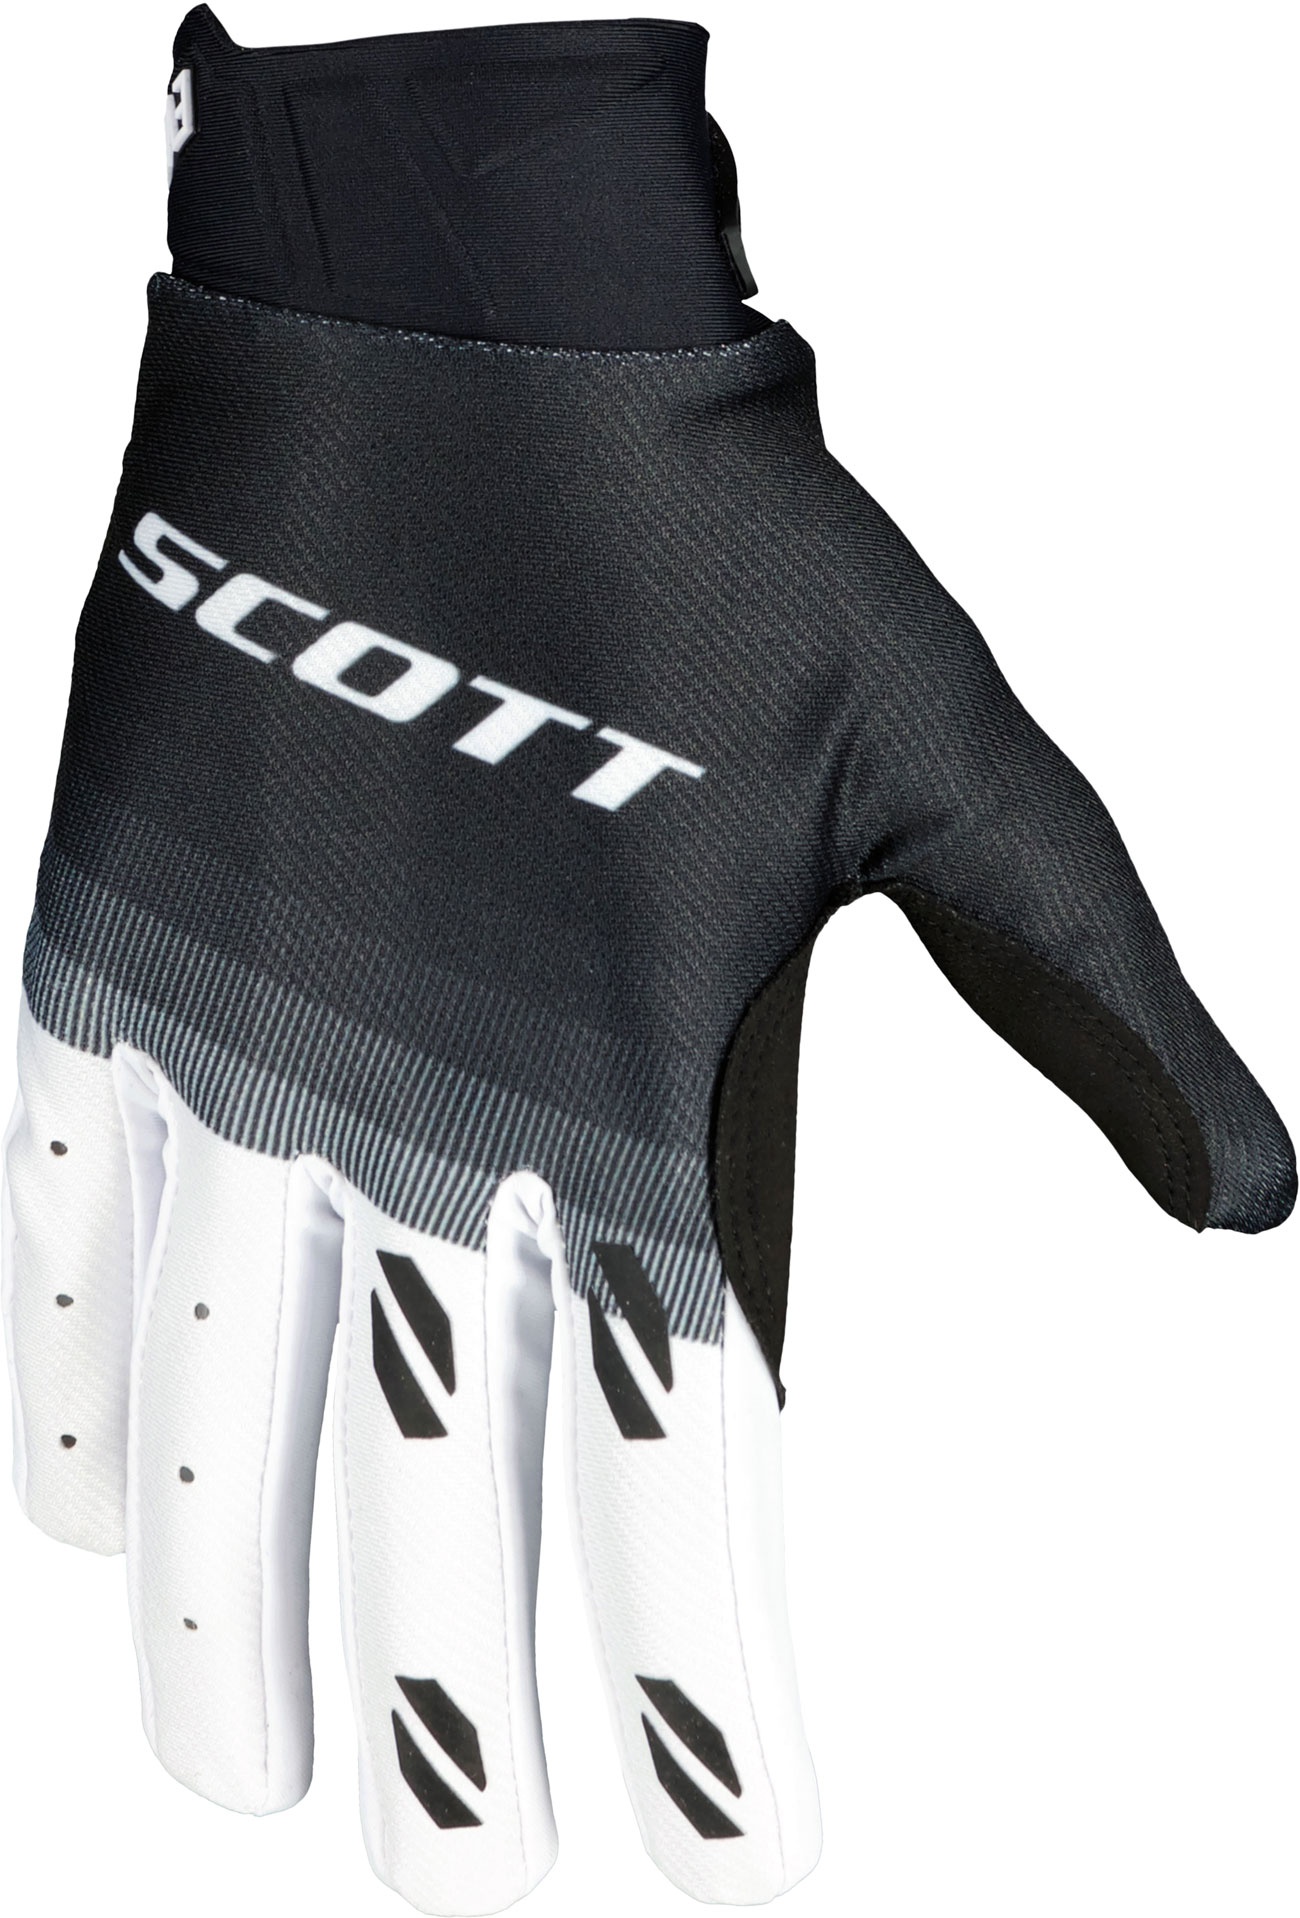 Scott Evo Fury S24, gants - Noir/Blanc - XXL